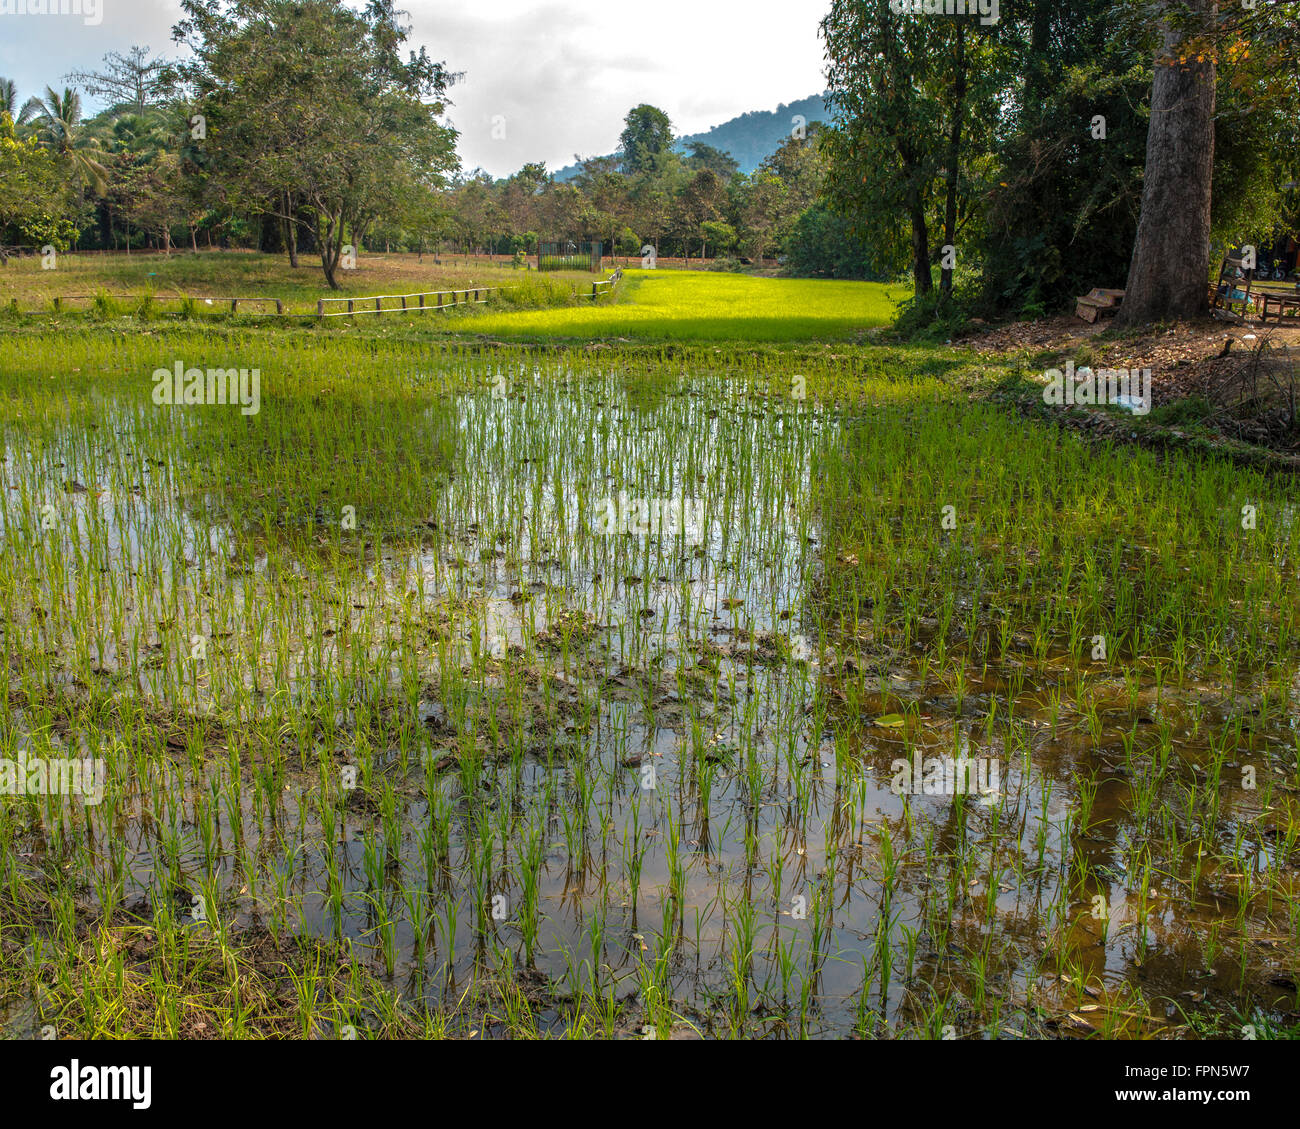 Piantate il riso in acqua di un campo di riso in Cambogia nei pressi di Banteay Srei, Cambogia con riflessi nell'acqua e un luminoso gree Foto Stock